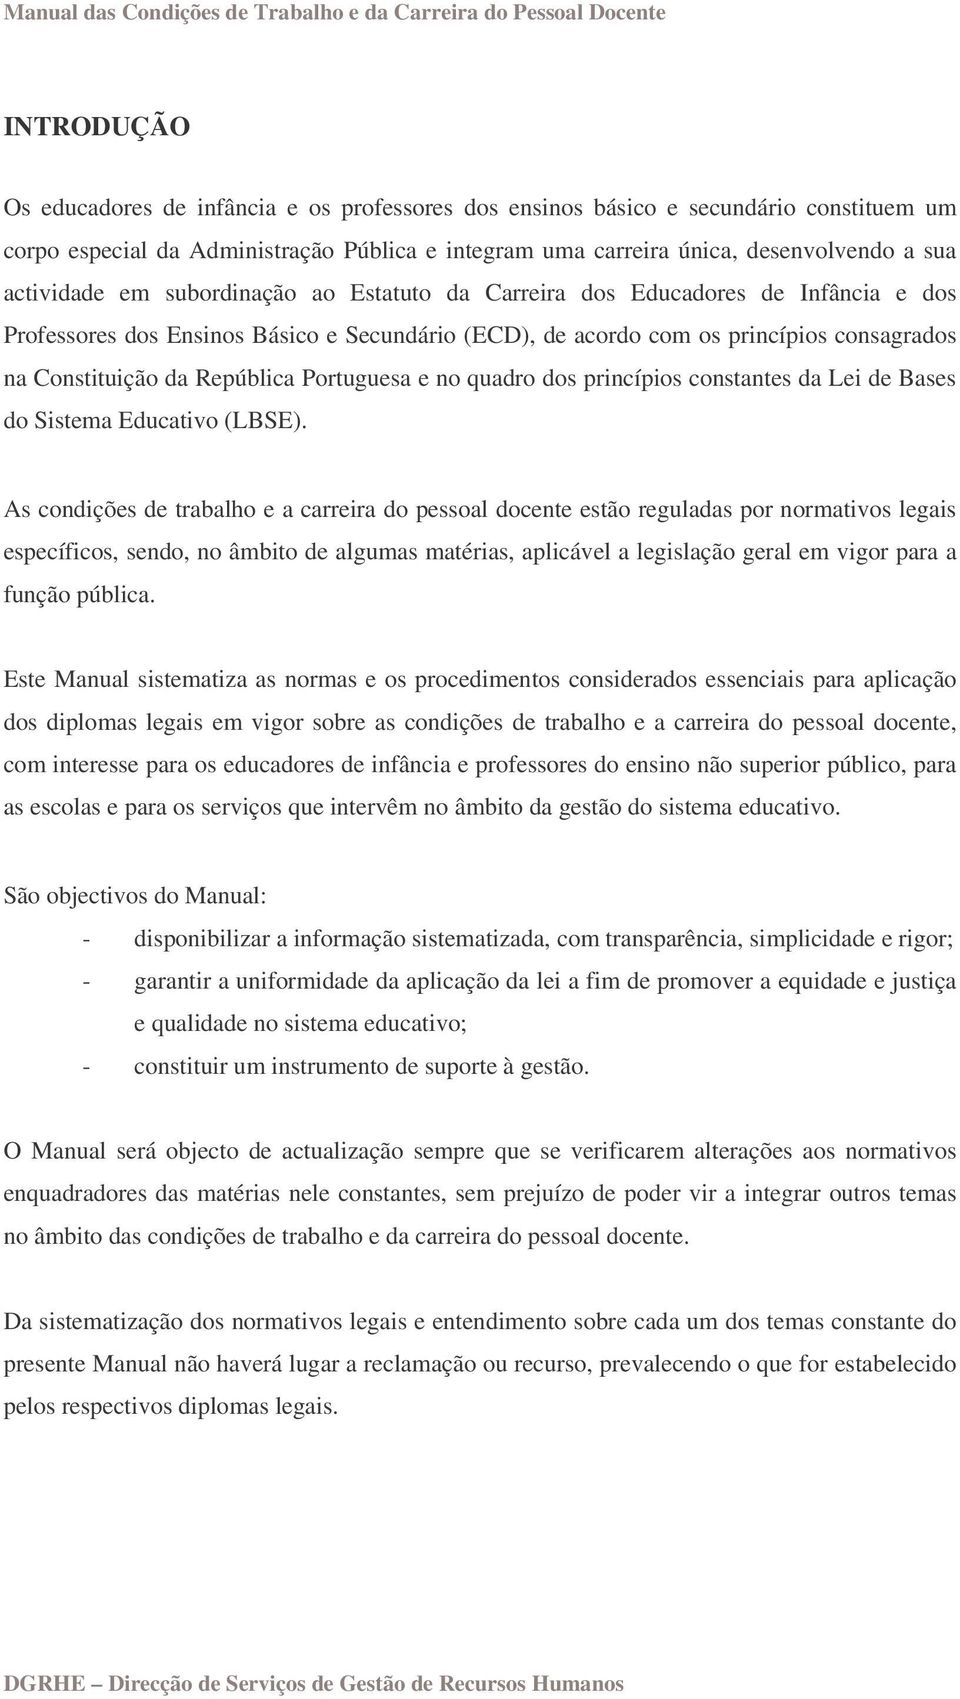 República Portuguesa e no quadro dos princípios constantes da Lei de Bases do Sistema Educativo (LBSE).